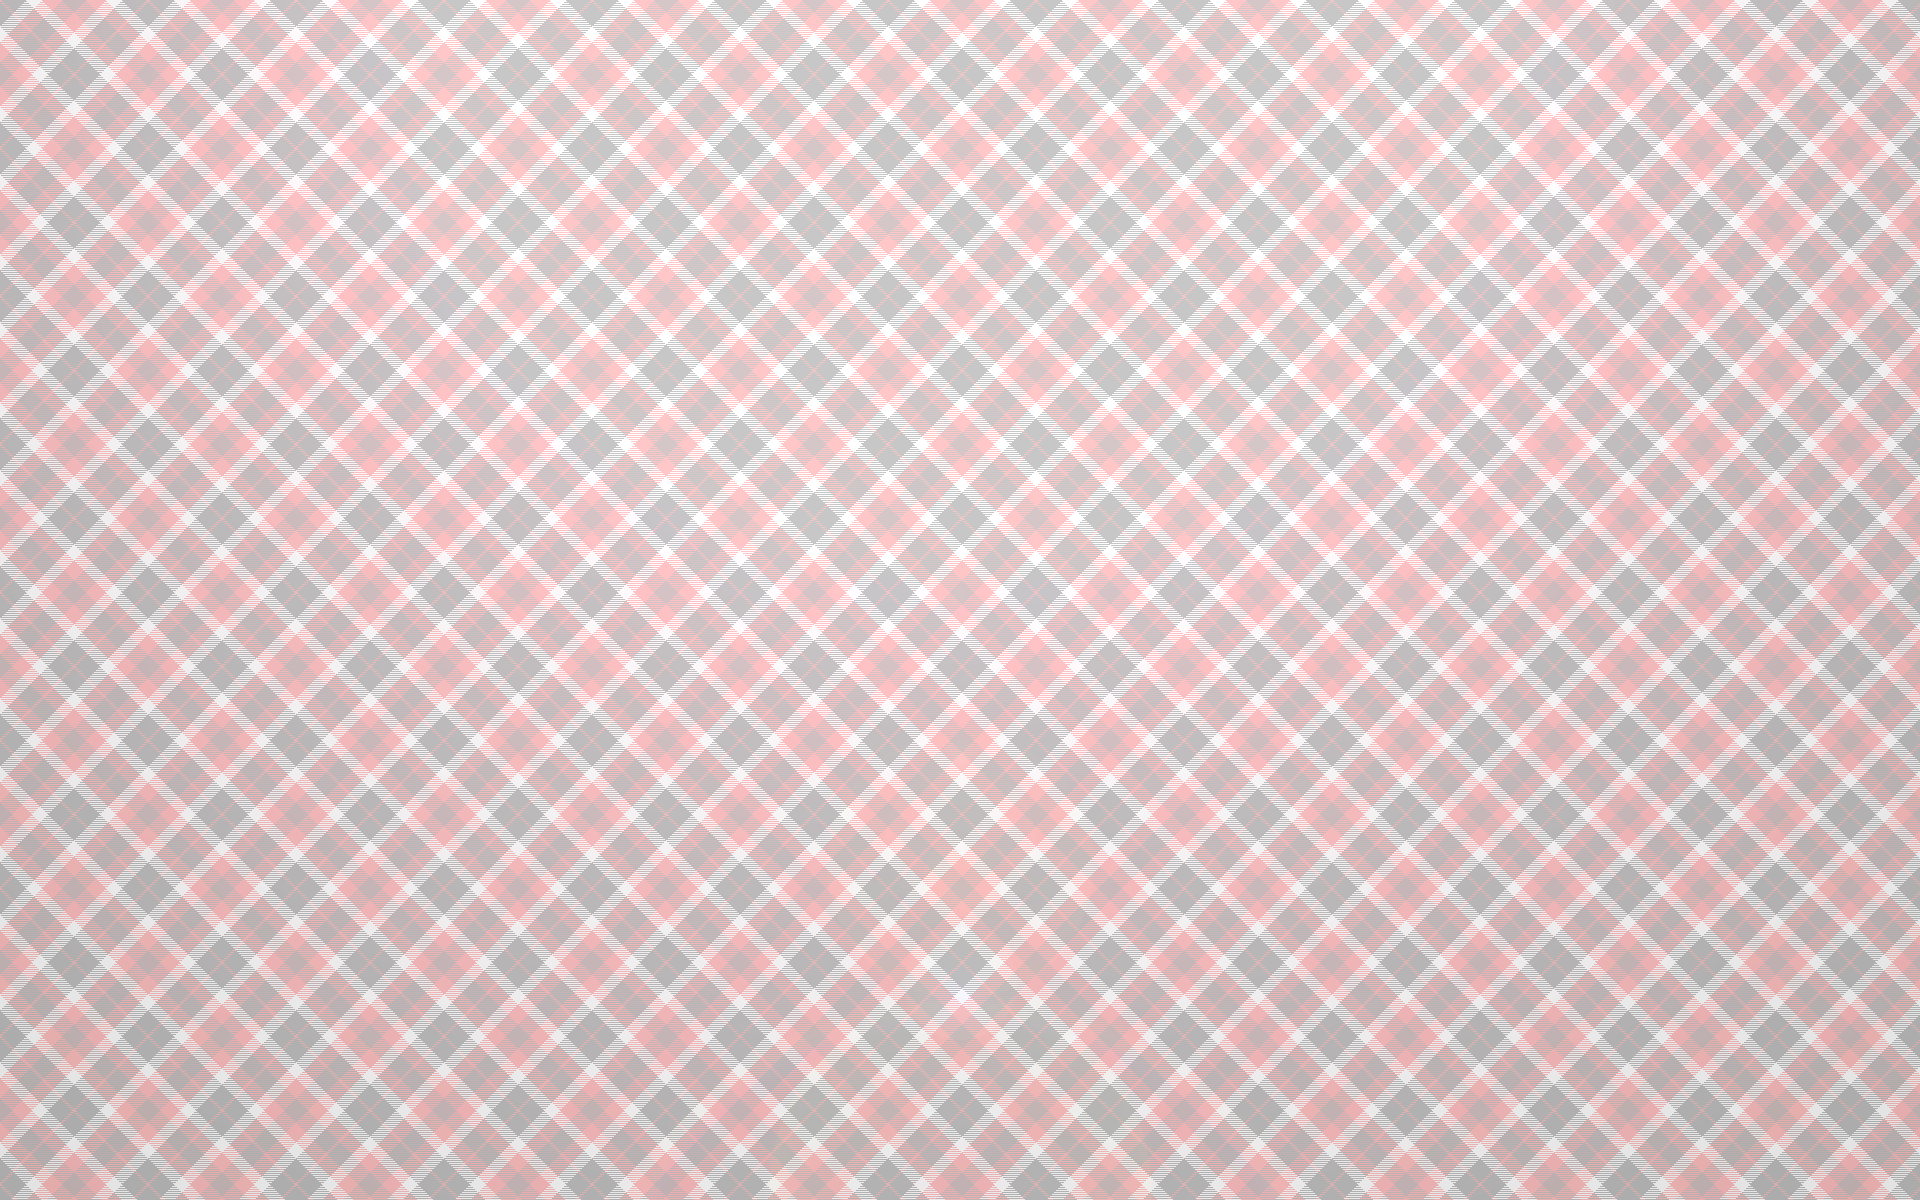 wallpaper patterns online 2015   Grasscloth Wallpaper 1920x1200